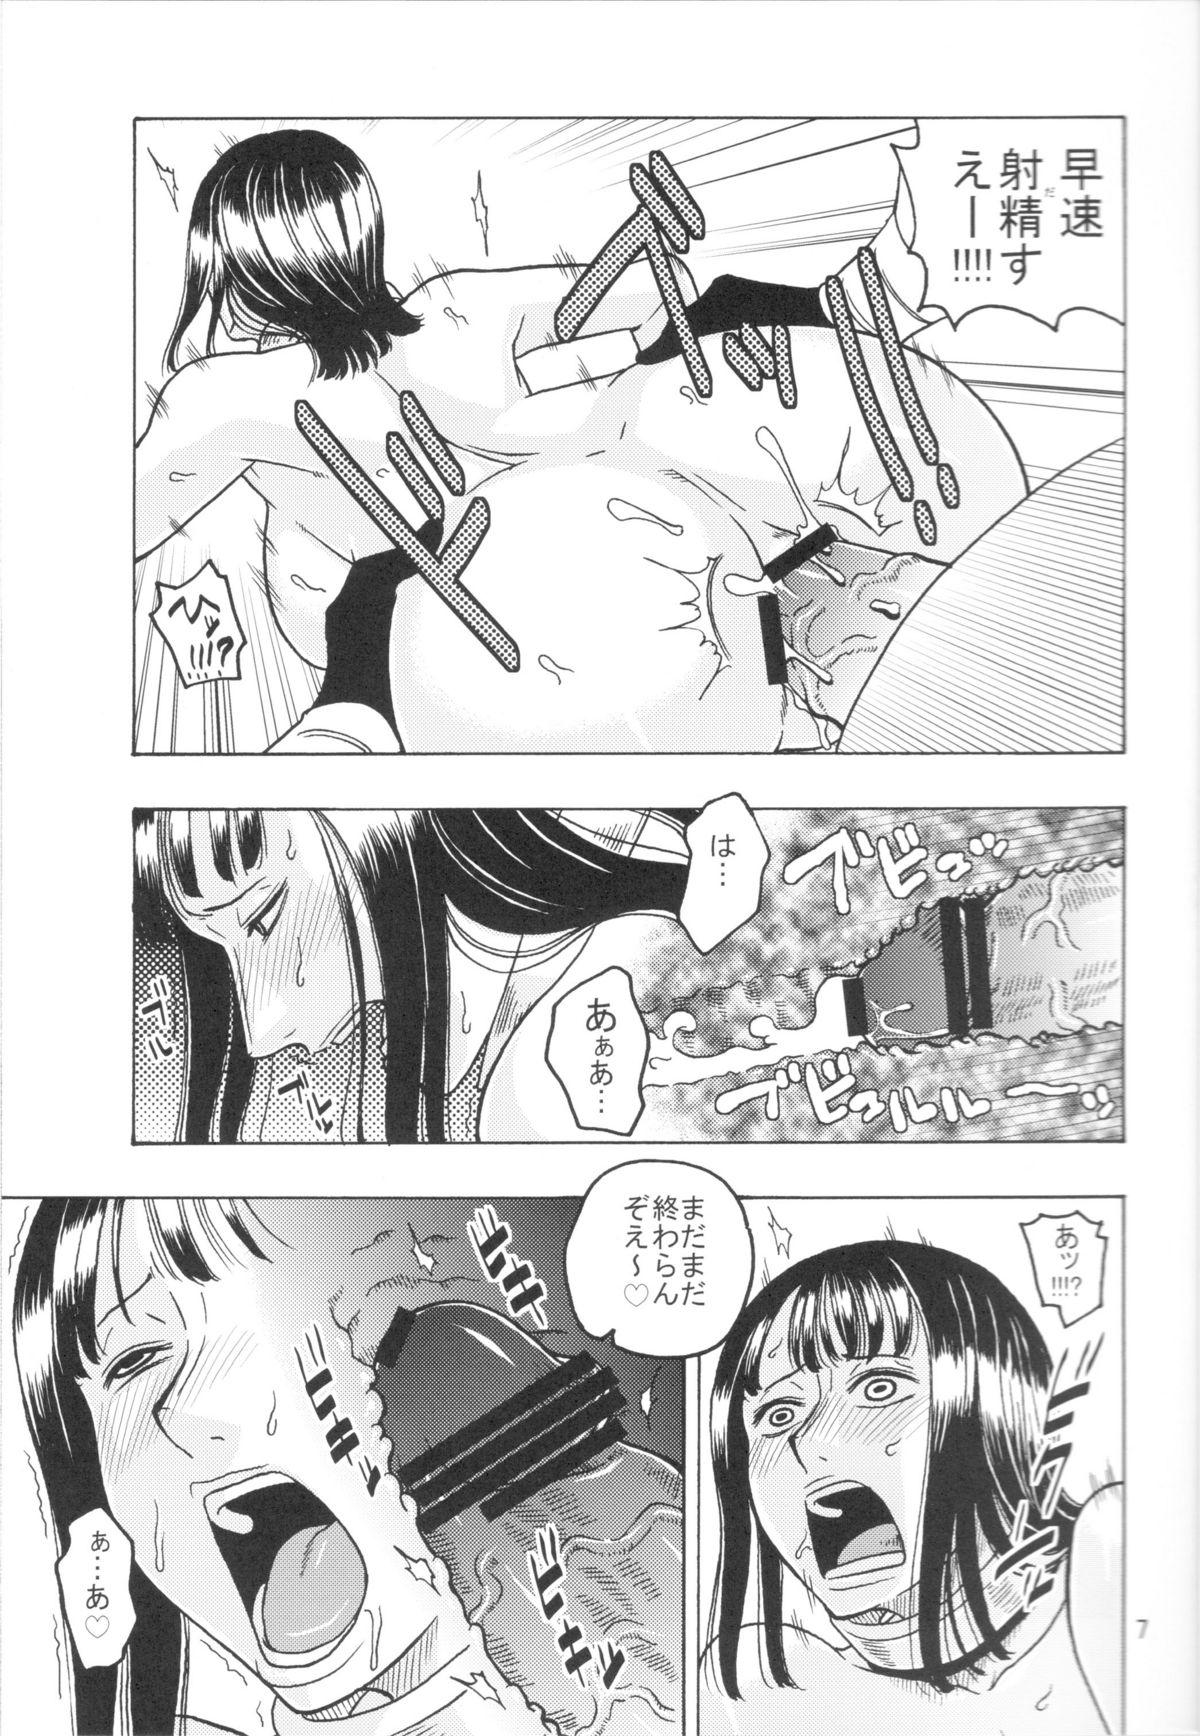 Orgasms Nami no Koukai Nisshi EX NamiRobi 3 - One piece Dykes - Page 8